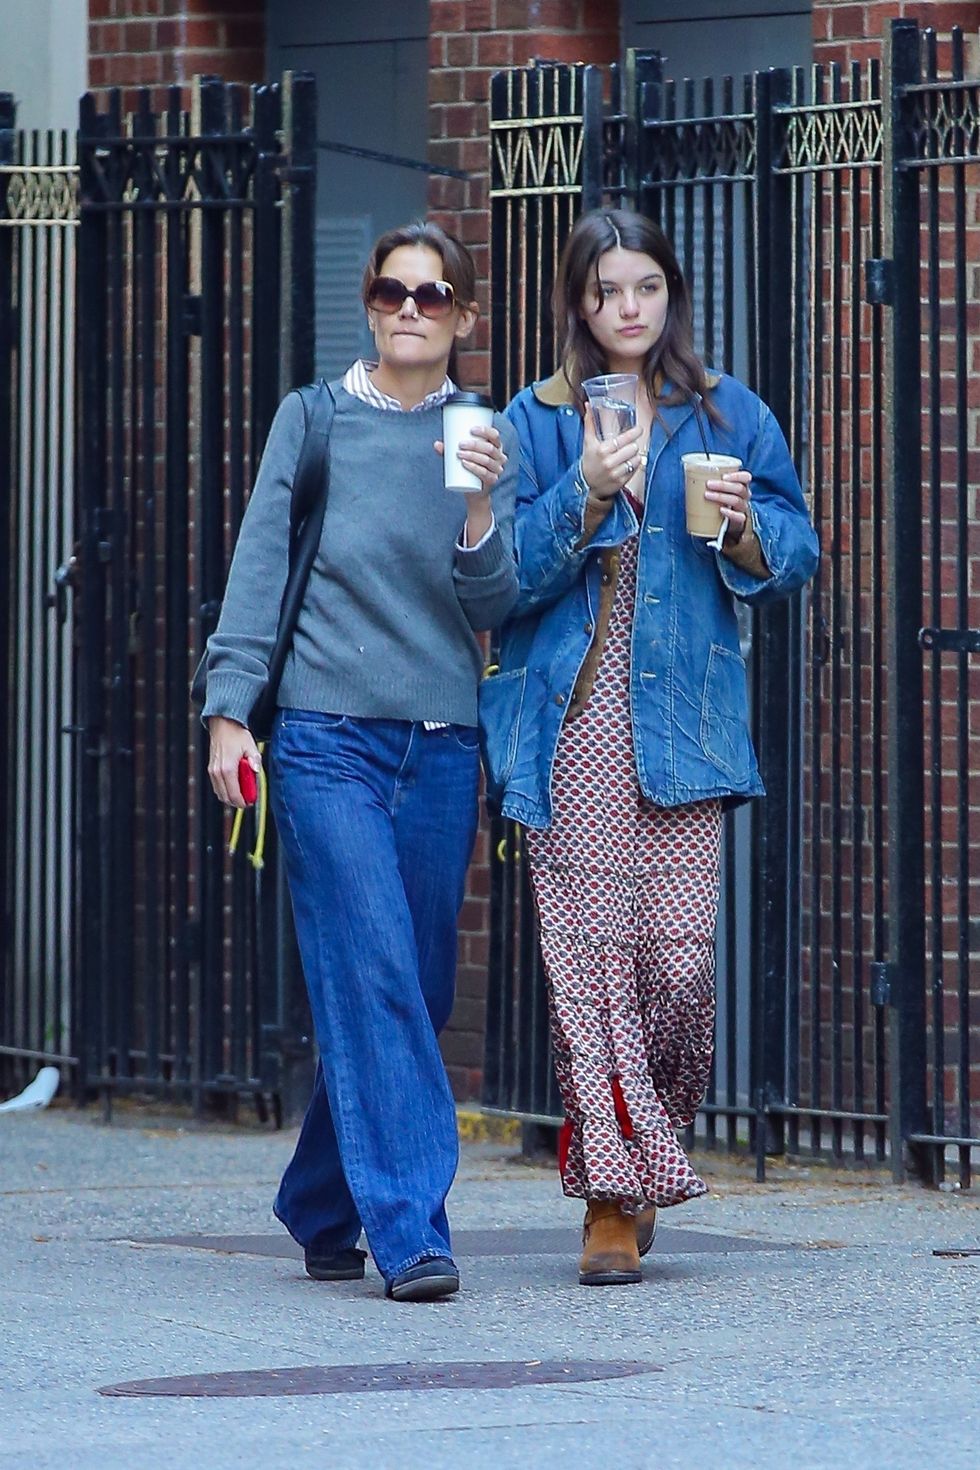 two women walking down a sidewalk